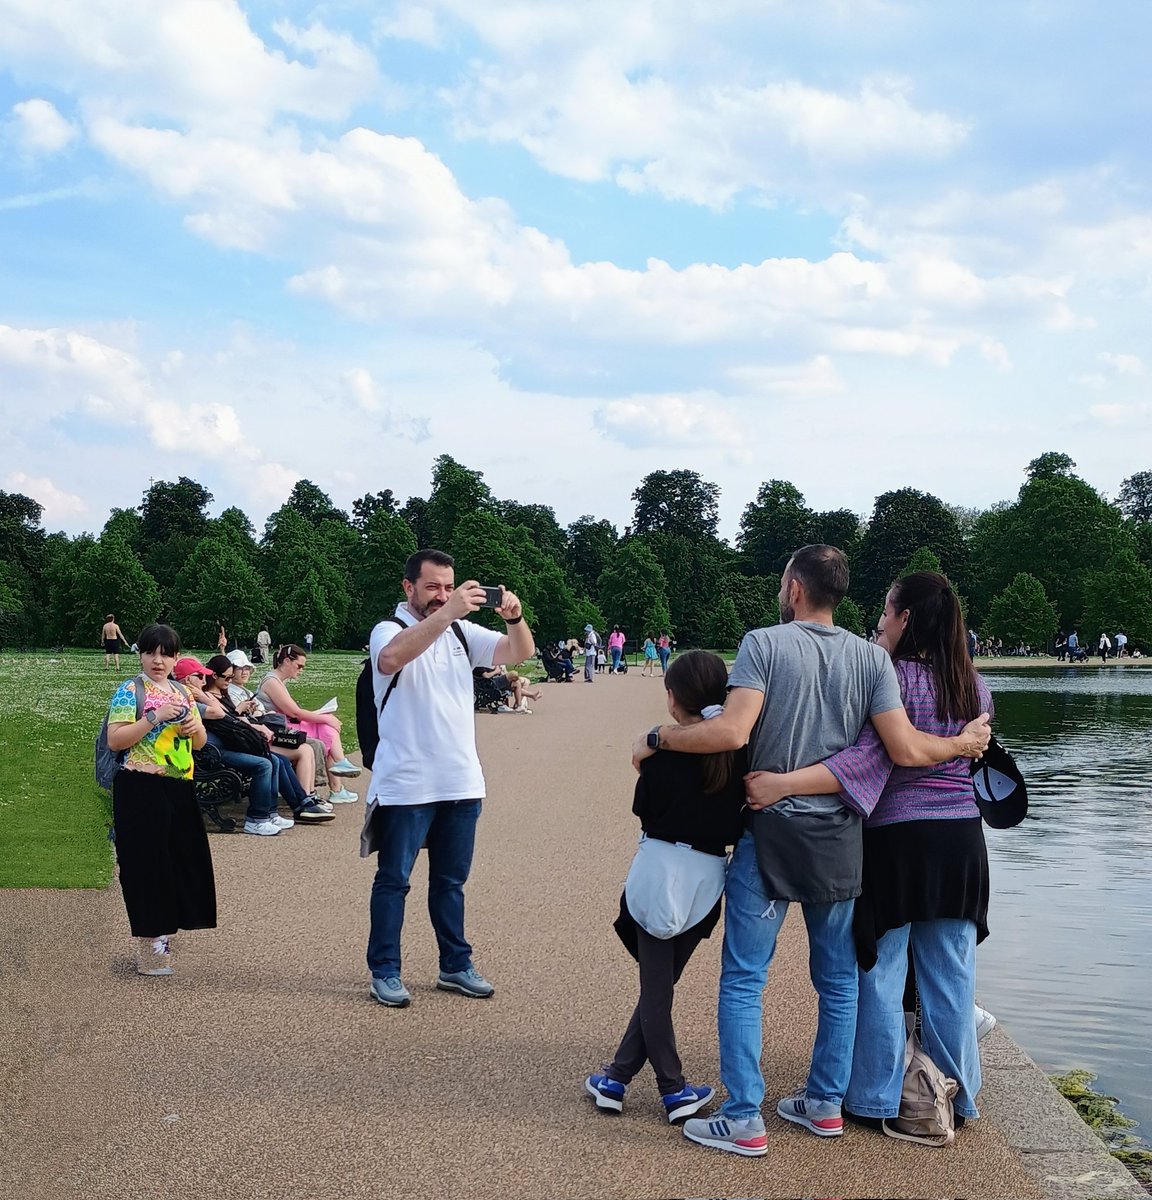 A Kodak moment at Hyde Park, London #london #familytime #family #hydepark #londoner